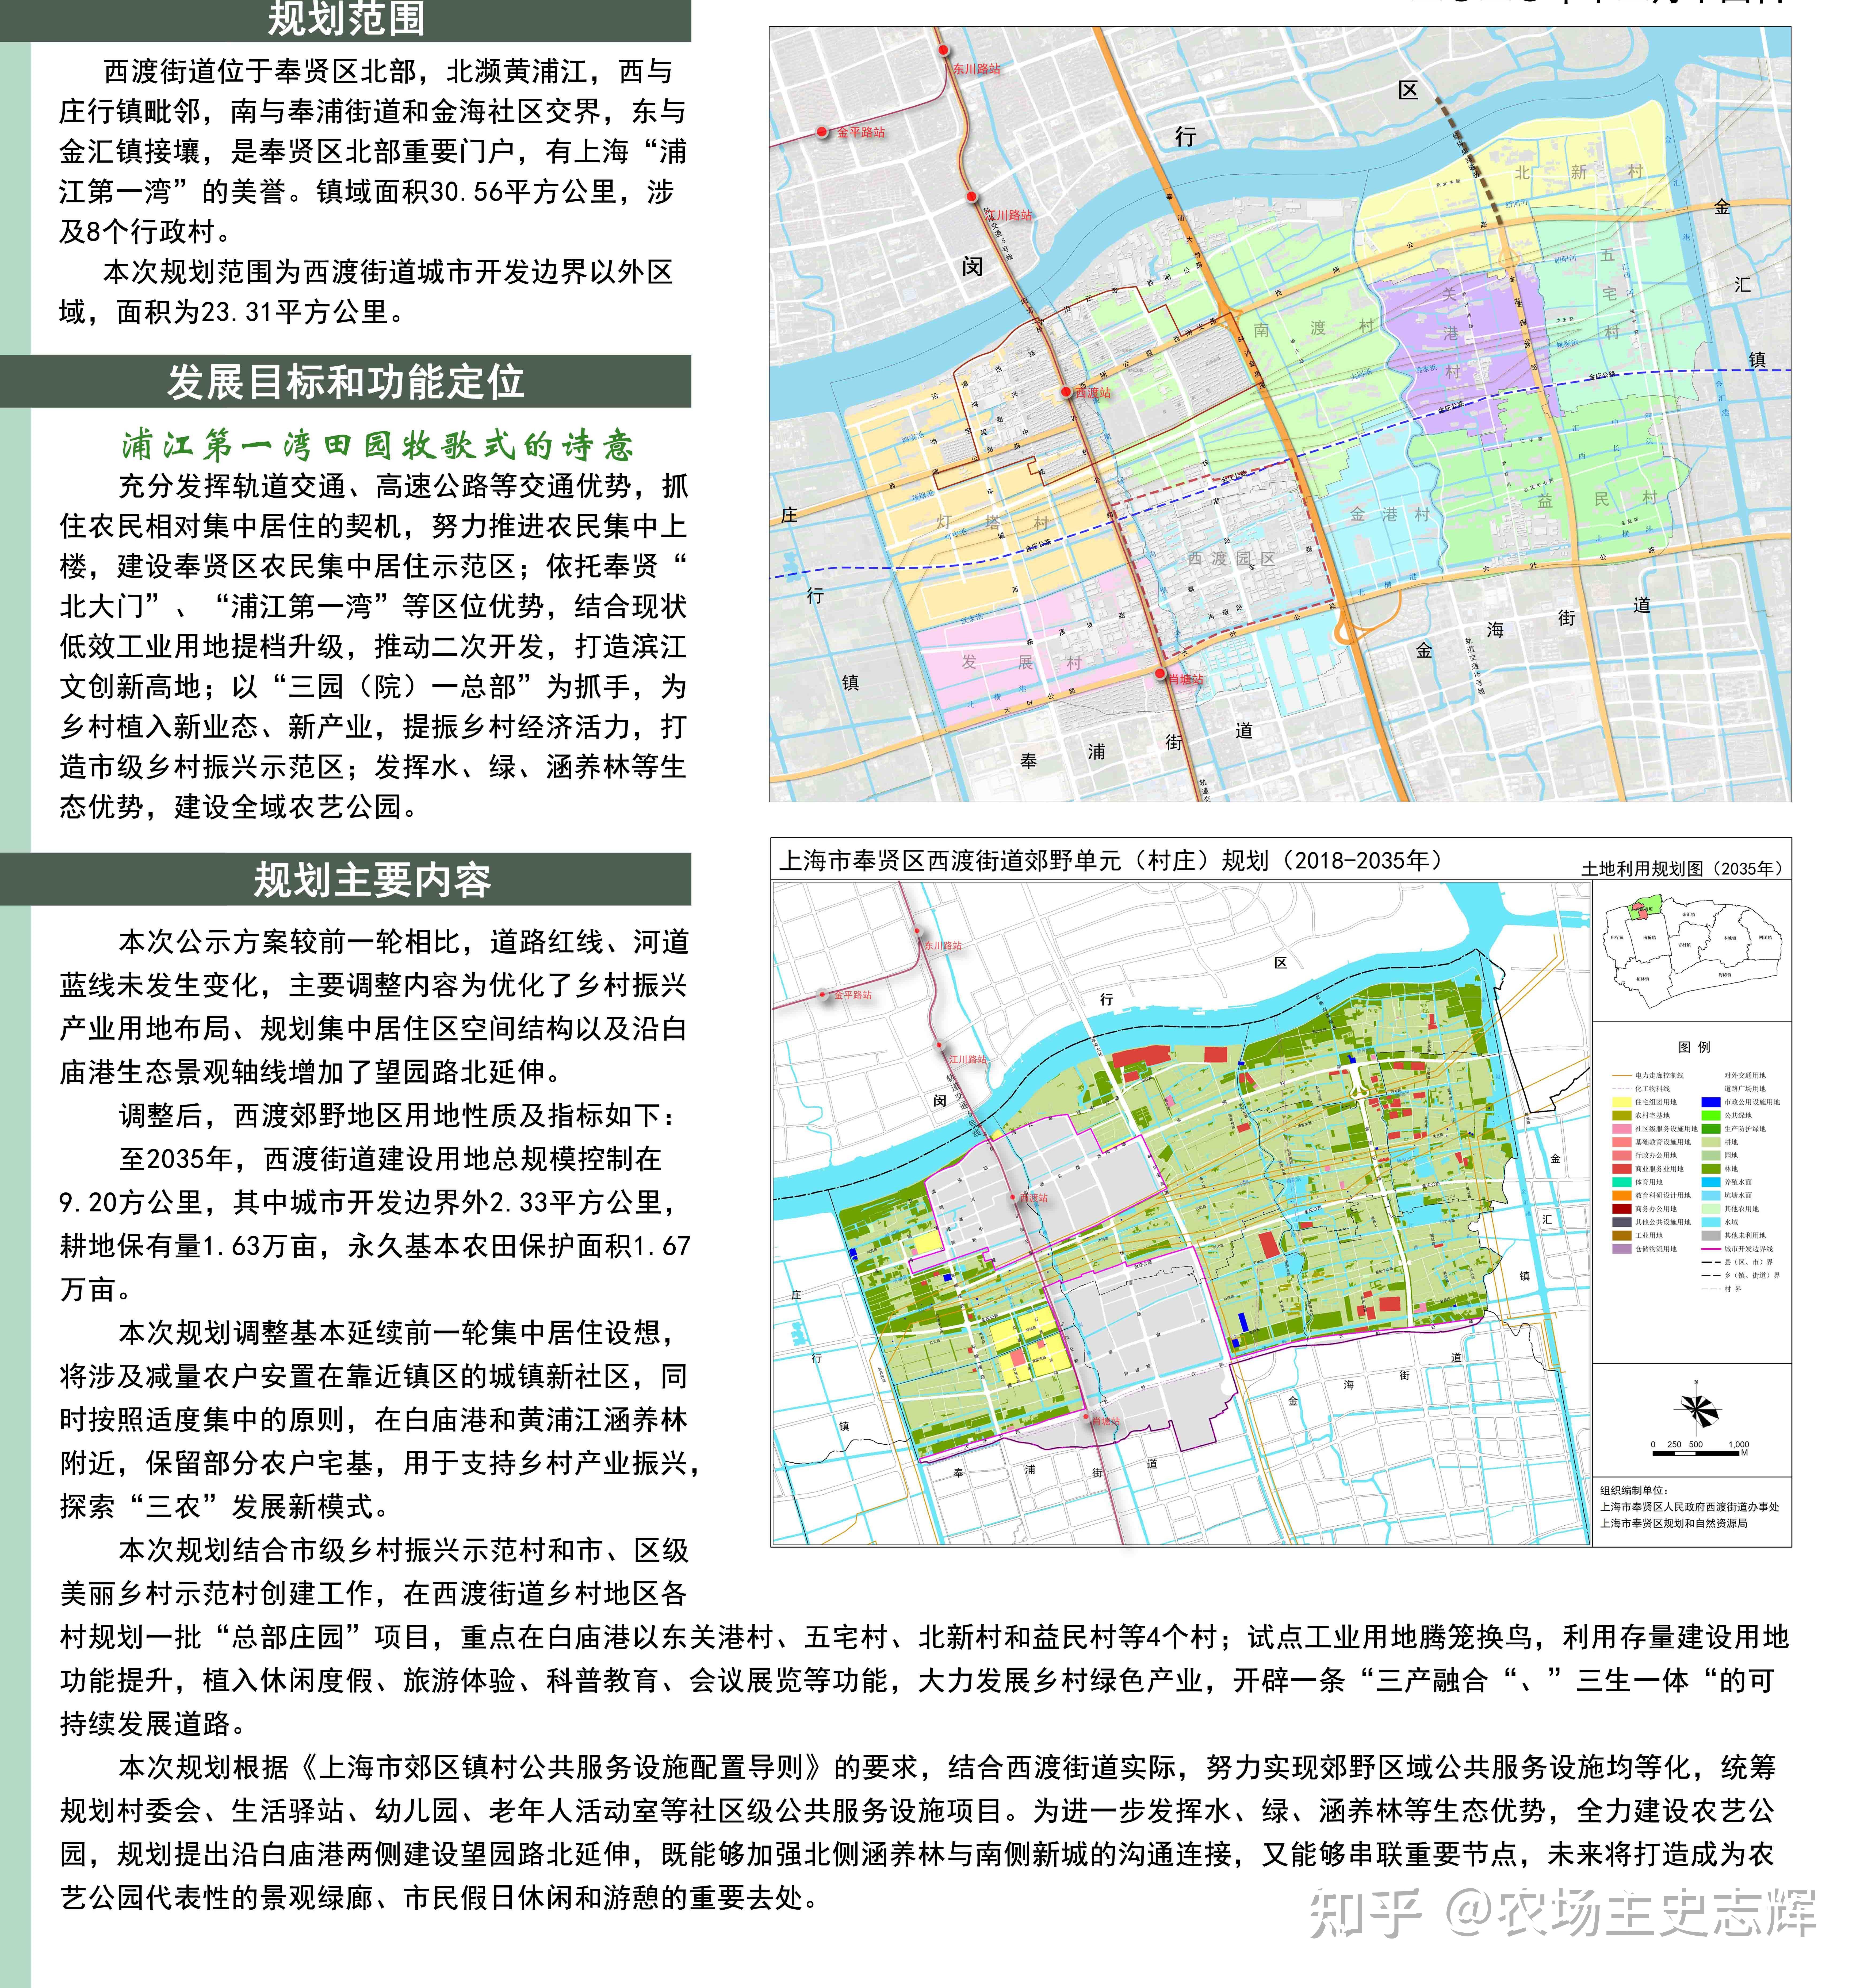 奉贤区最新空间规划公示 奉贤新城引入5条公共交通线